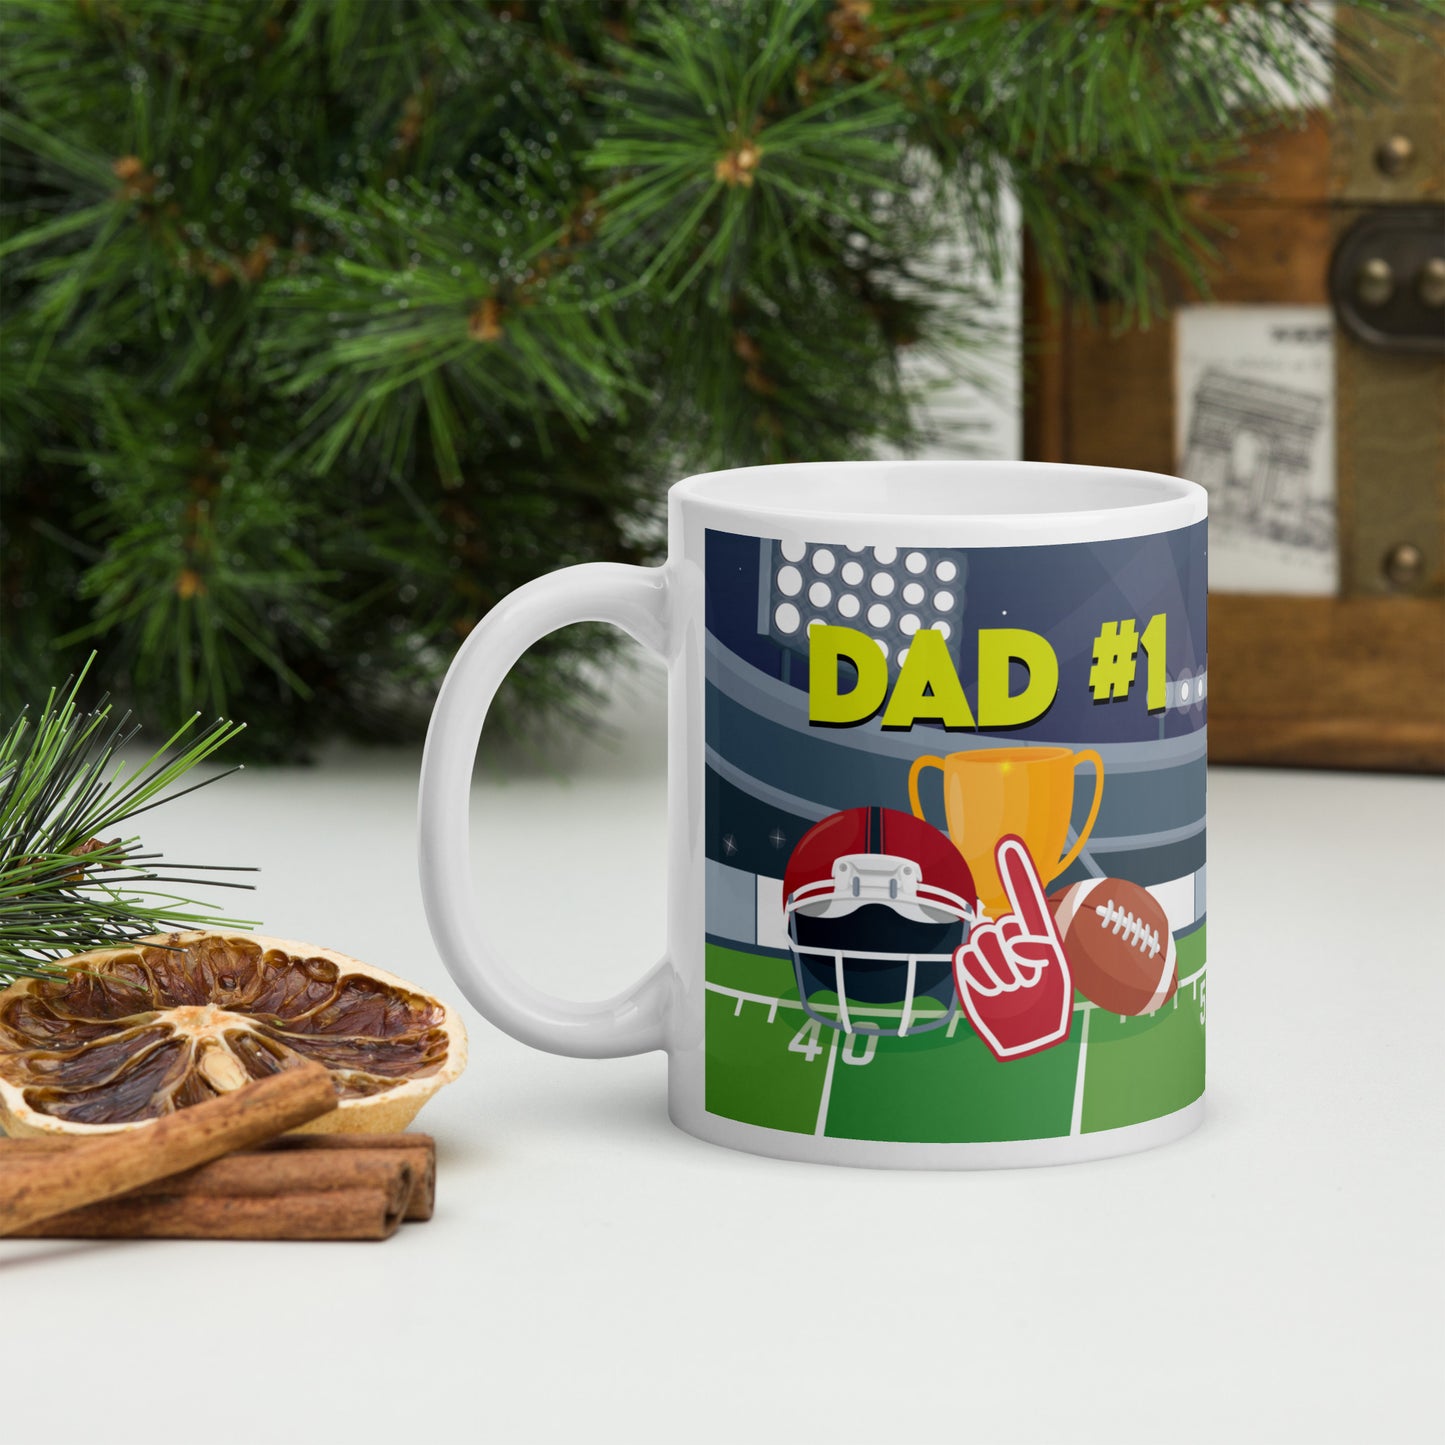 Dad #1 Mug